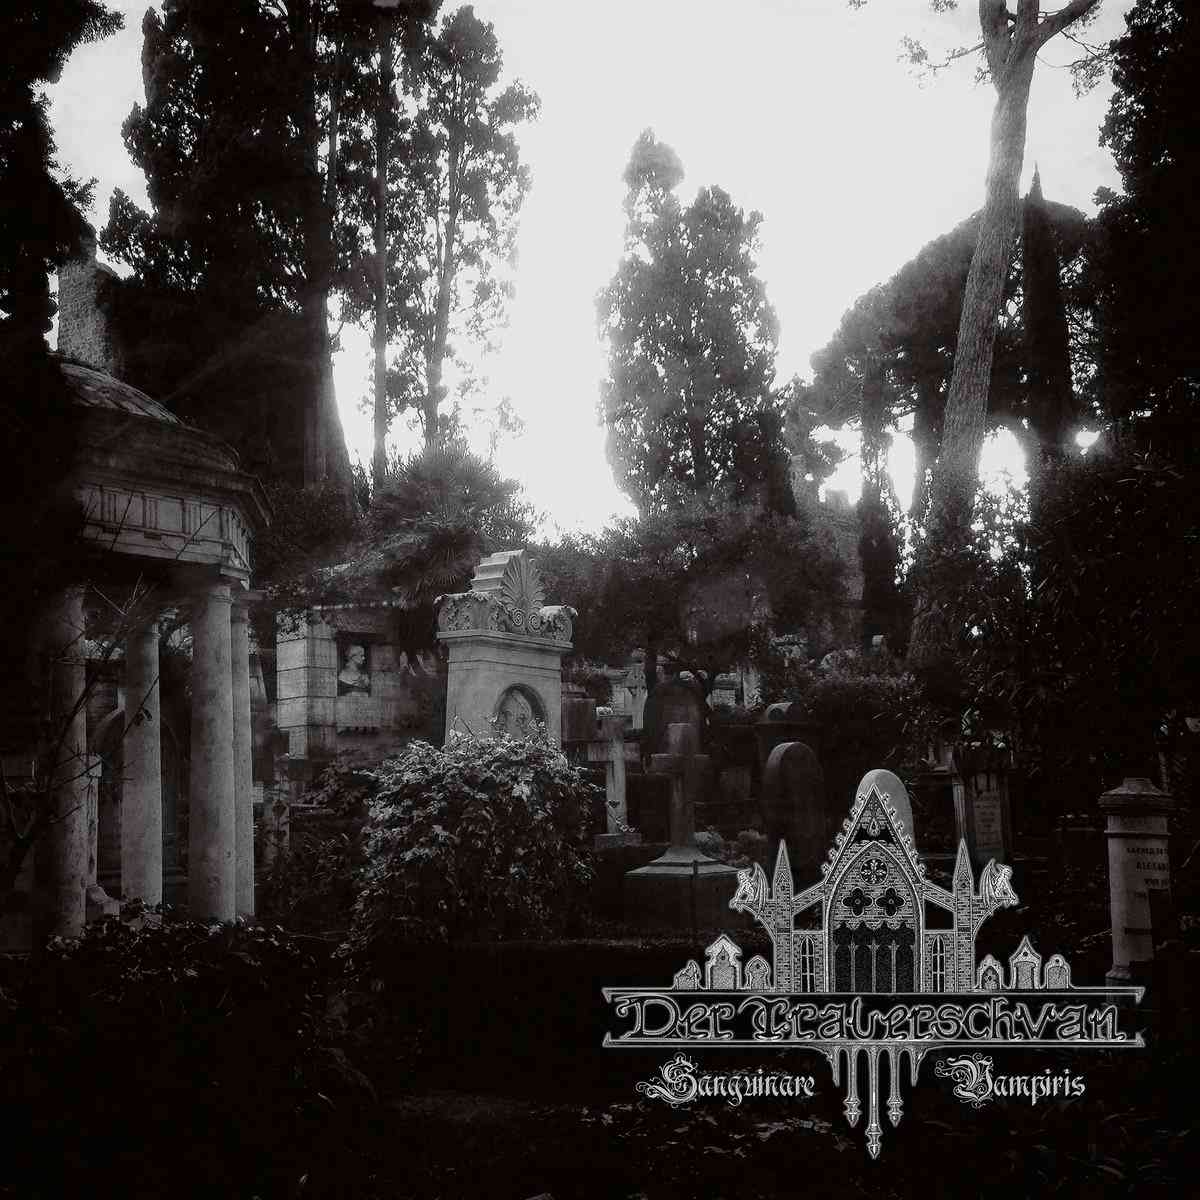 der trauerschwan - Sanguinare Vampiris - album cover